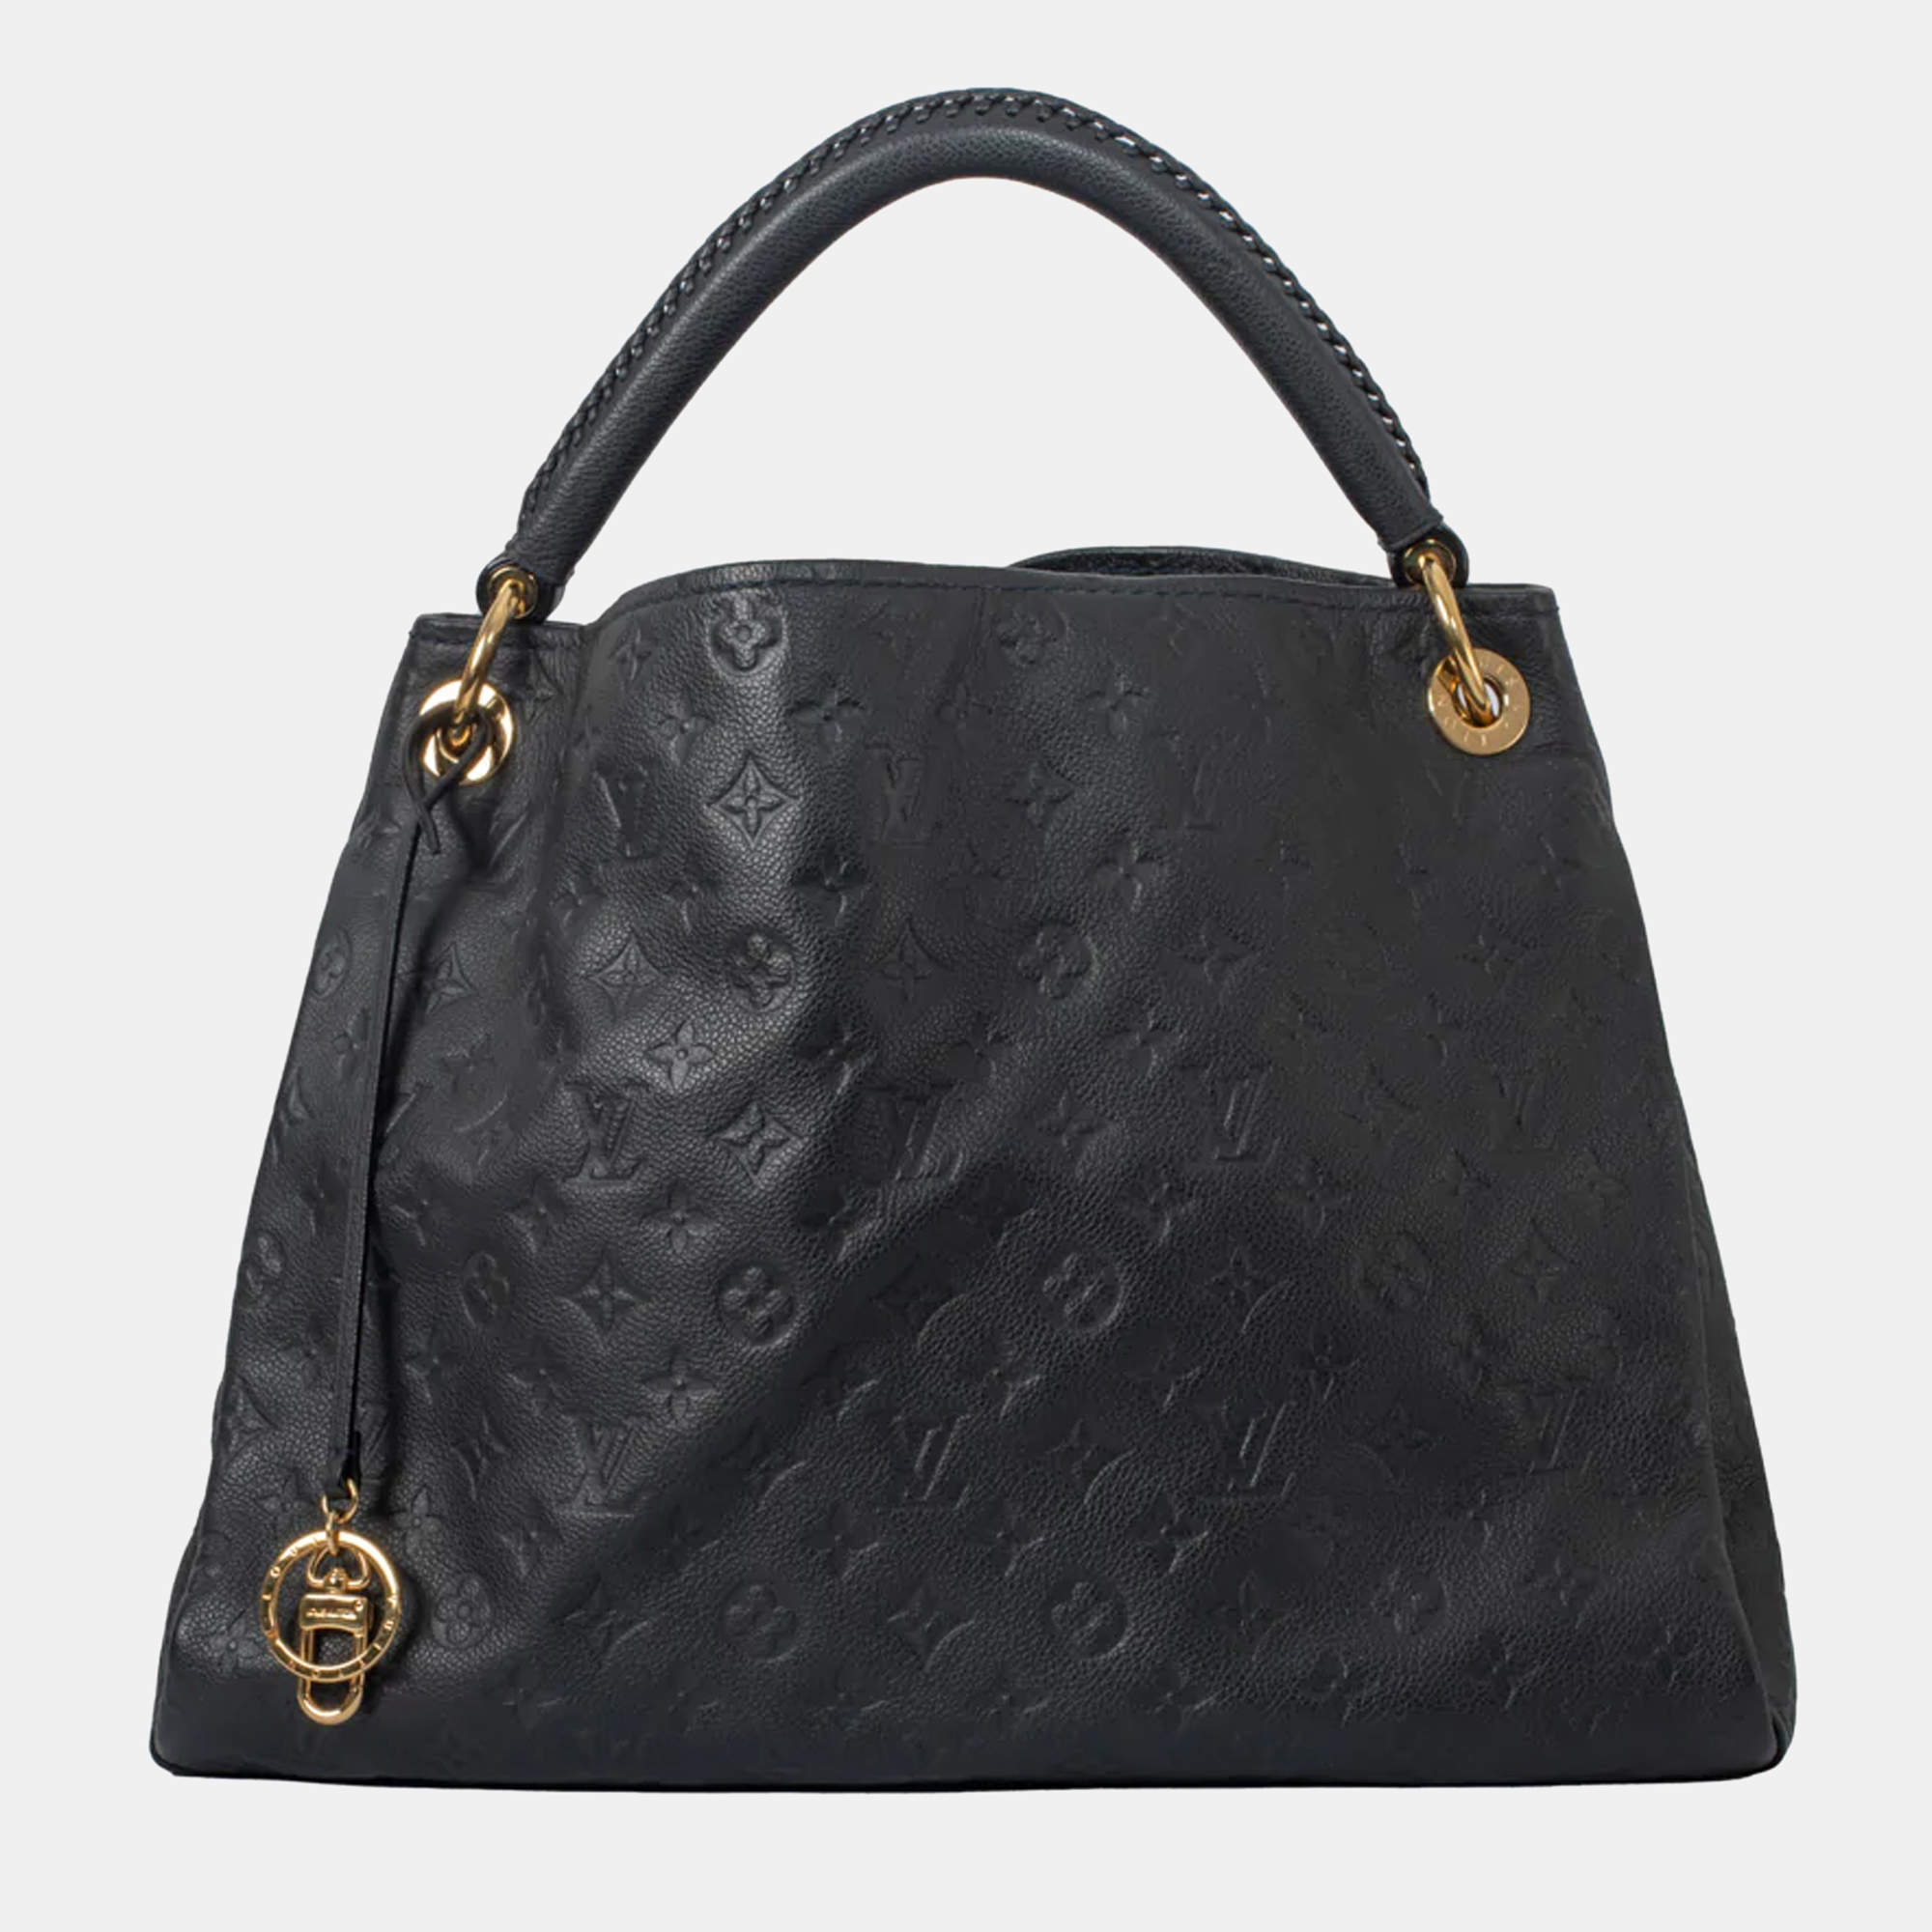 Louis Vuitton, Bags, Louis Vuitton Artsy Mm Black Bag